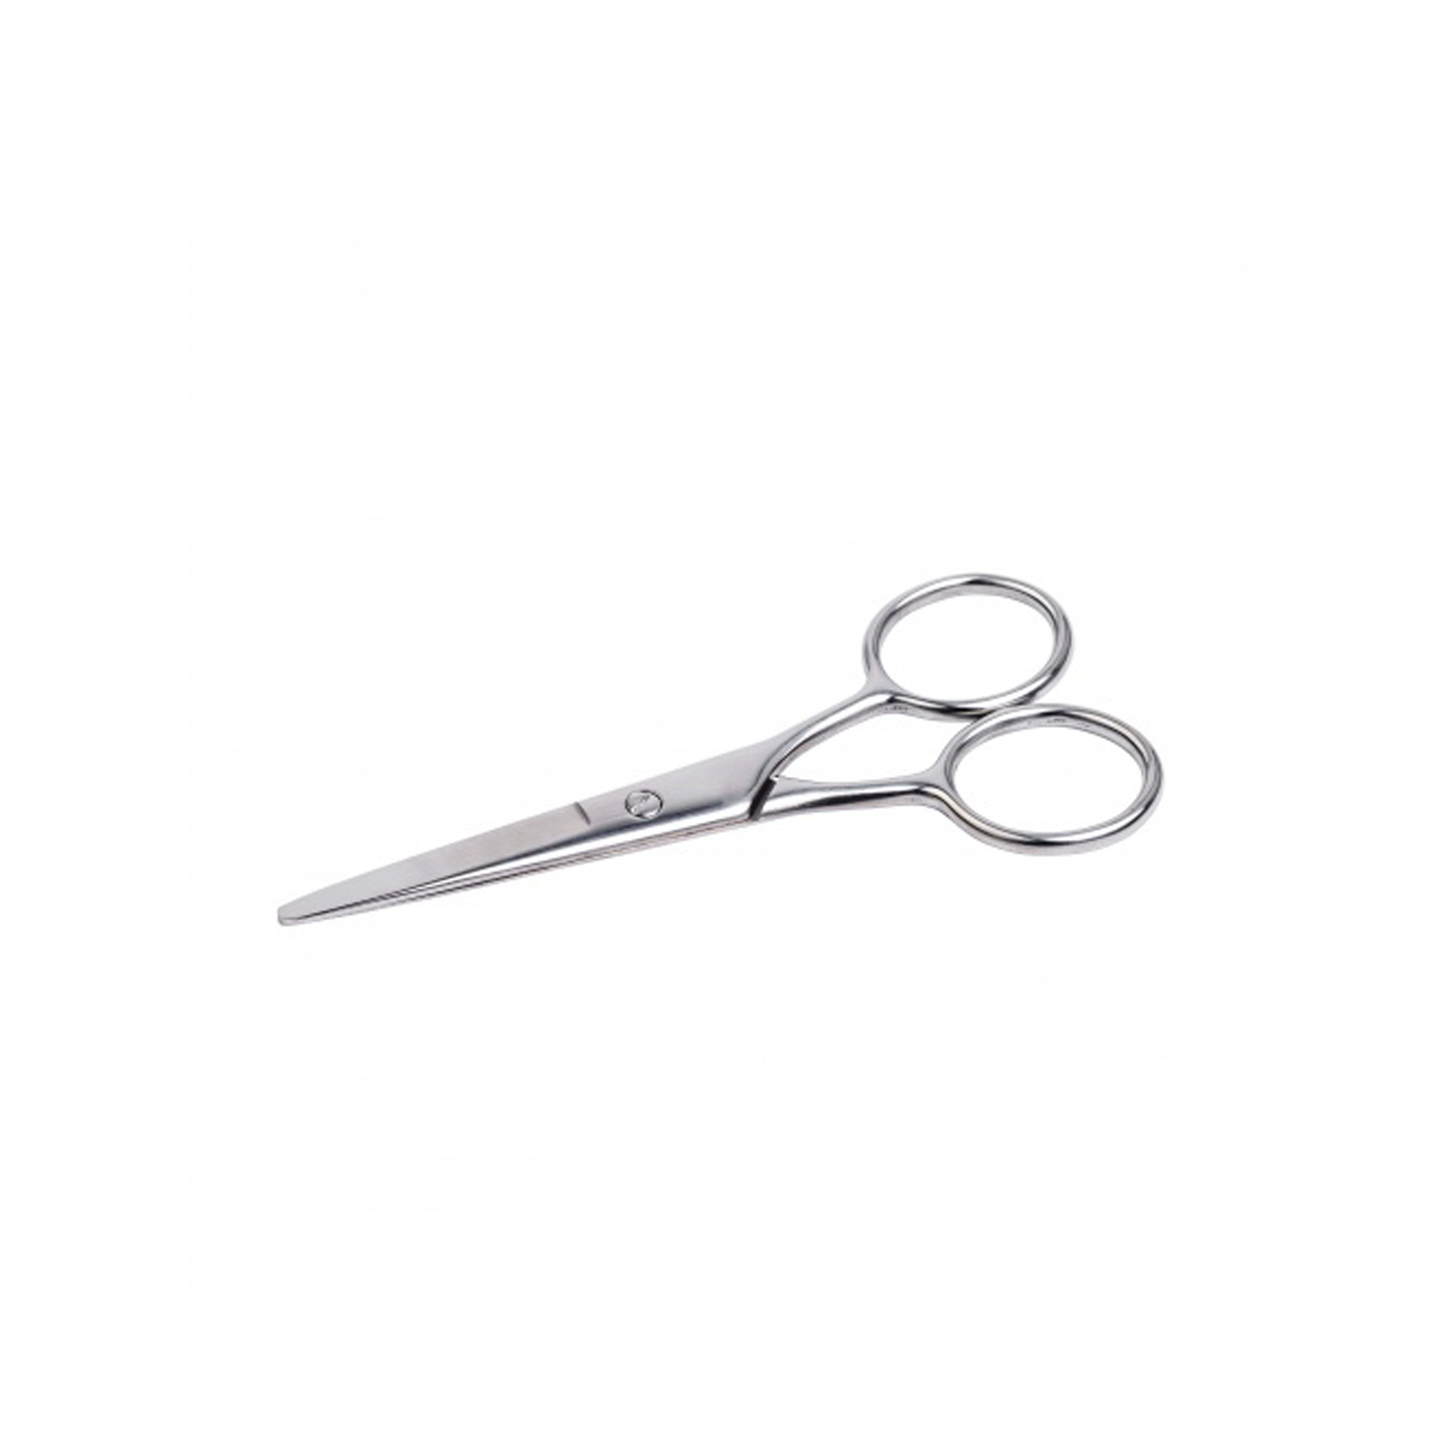 Scissors for cutting exercises - GAM AMI